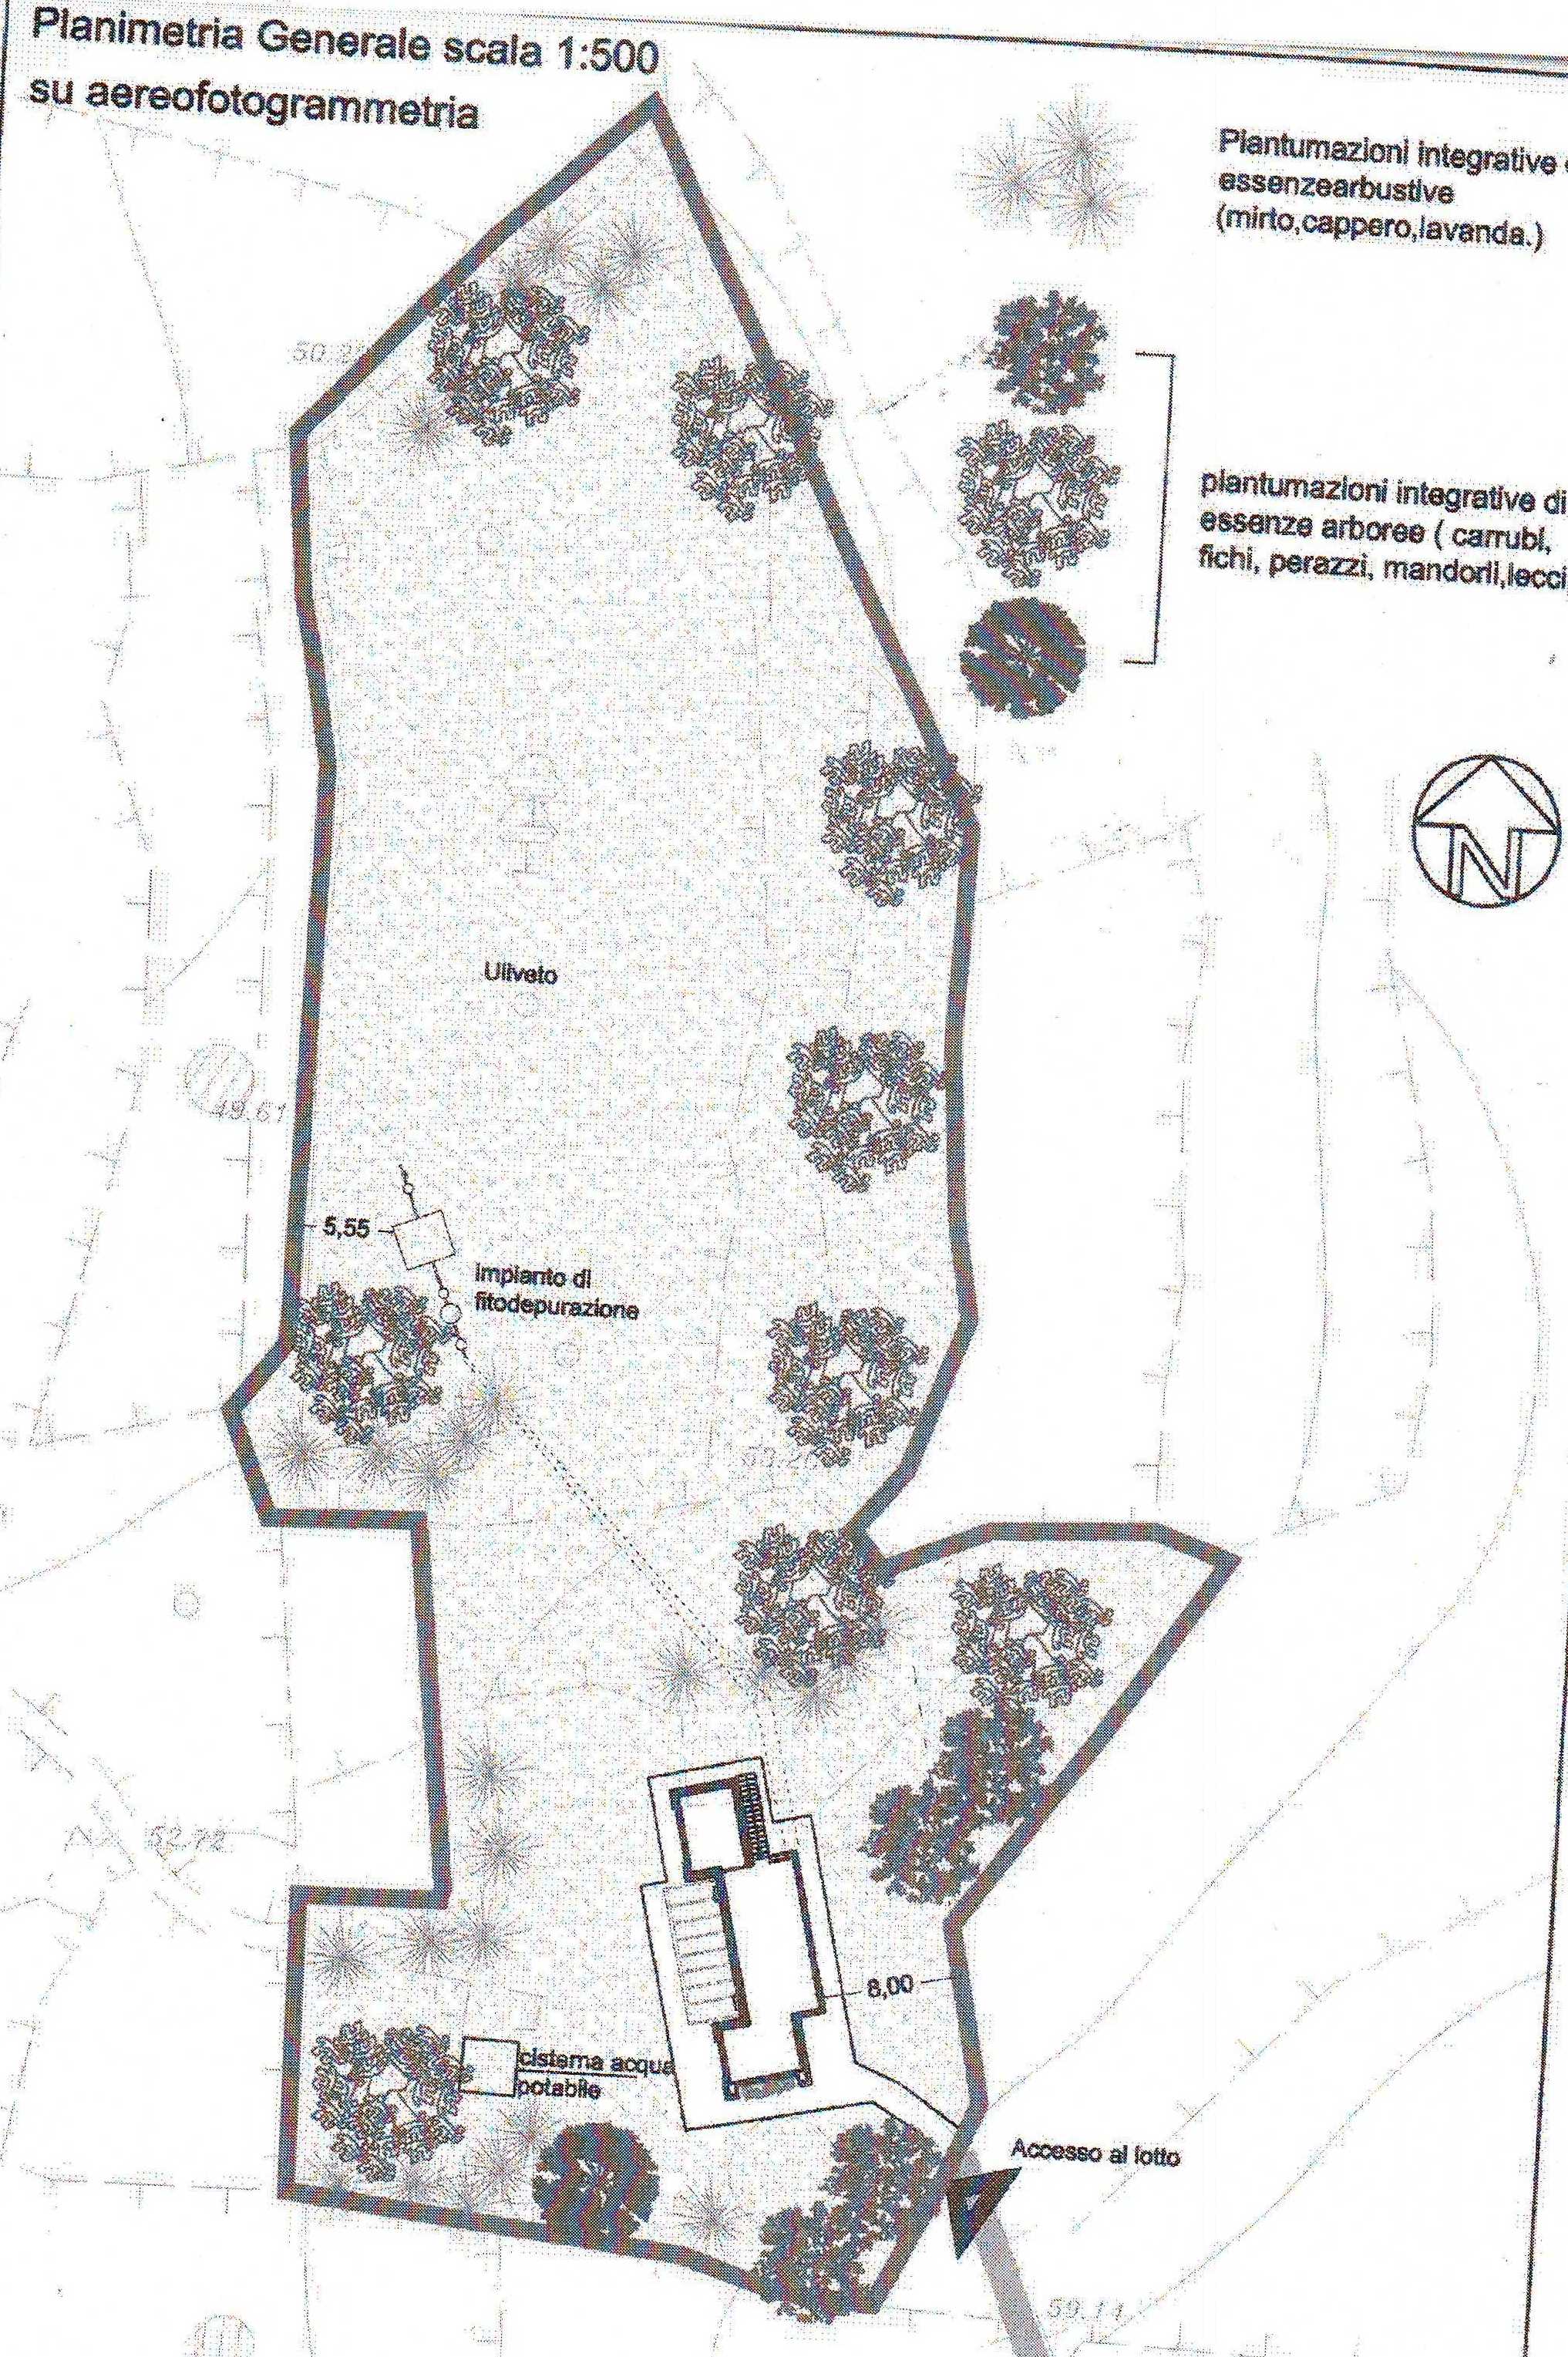 Vendite Salento: Vendita terreno agricolo (Castrignano del Capo) - planimetria generale